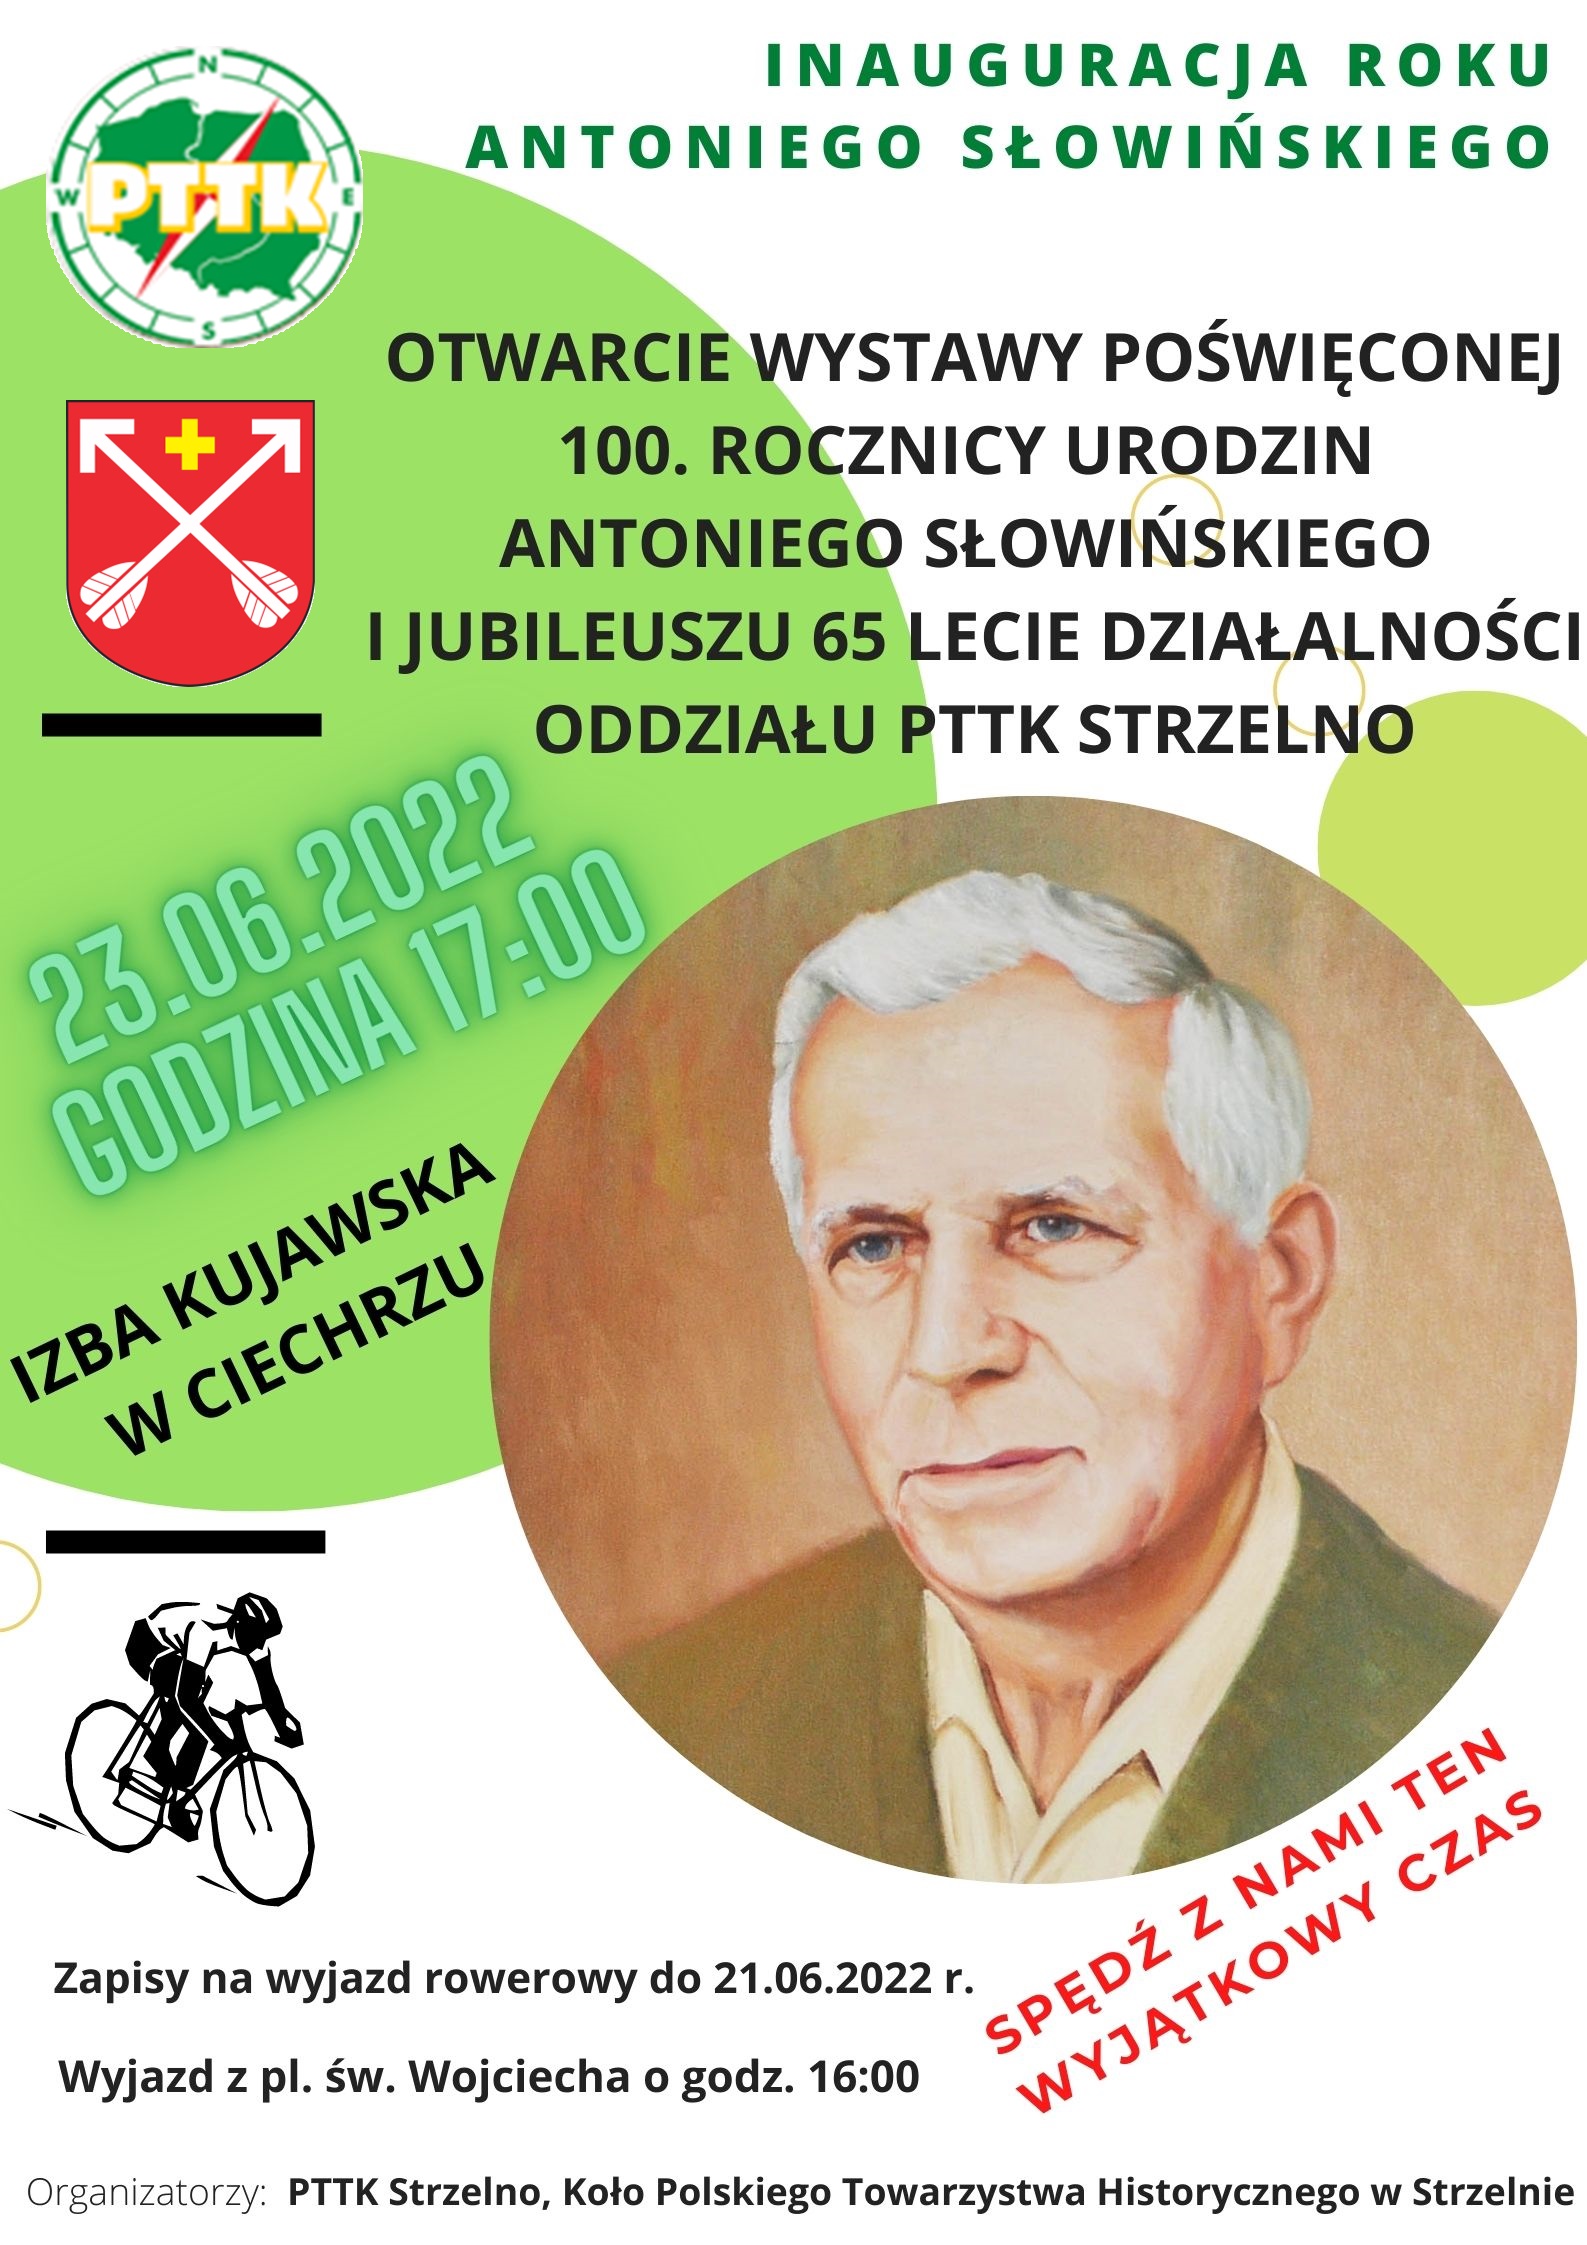 Inauguracja Roku Antoniego Słowińskiego